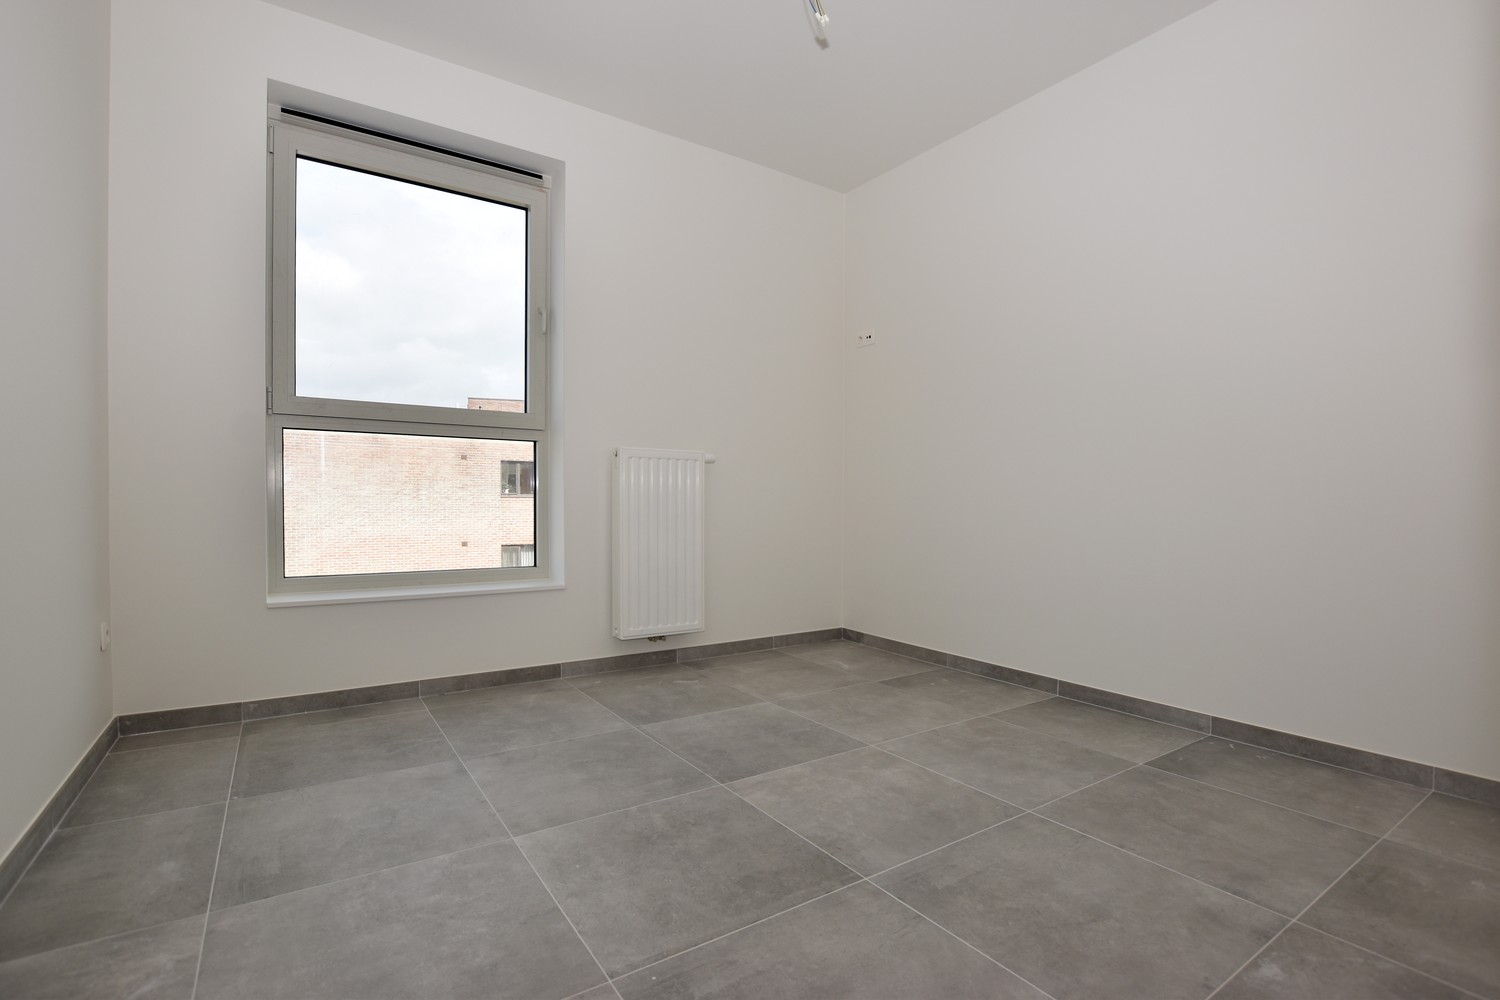 Nieuw appartement met 2 slaapkamers en terras te Deurne-Oost! afbeelding 8